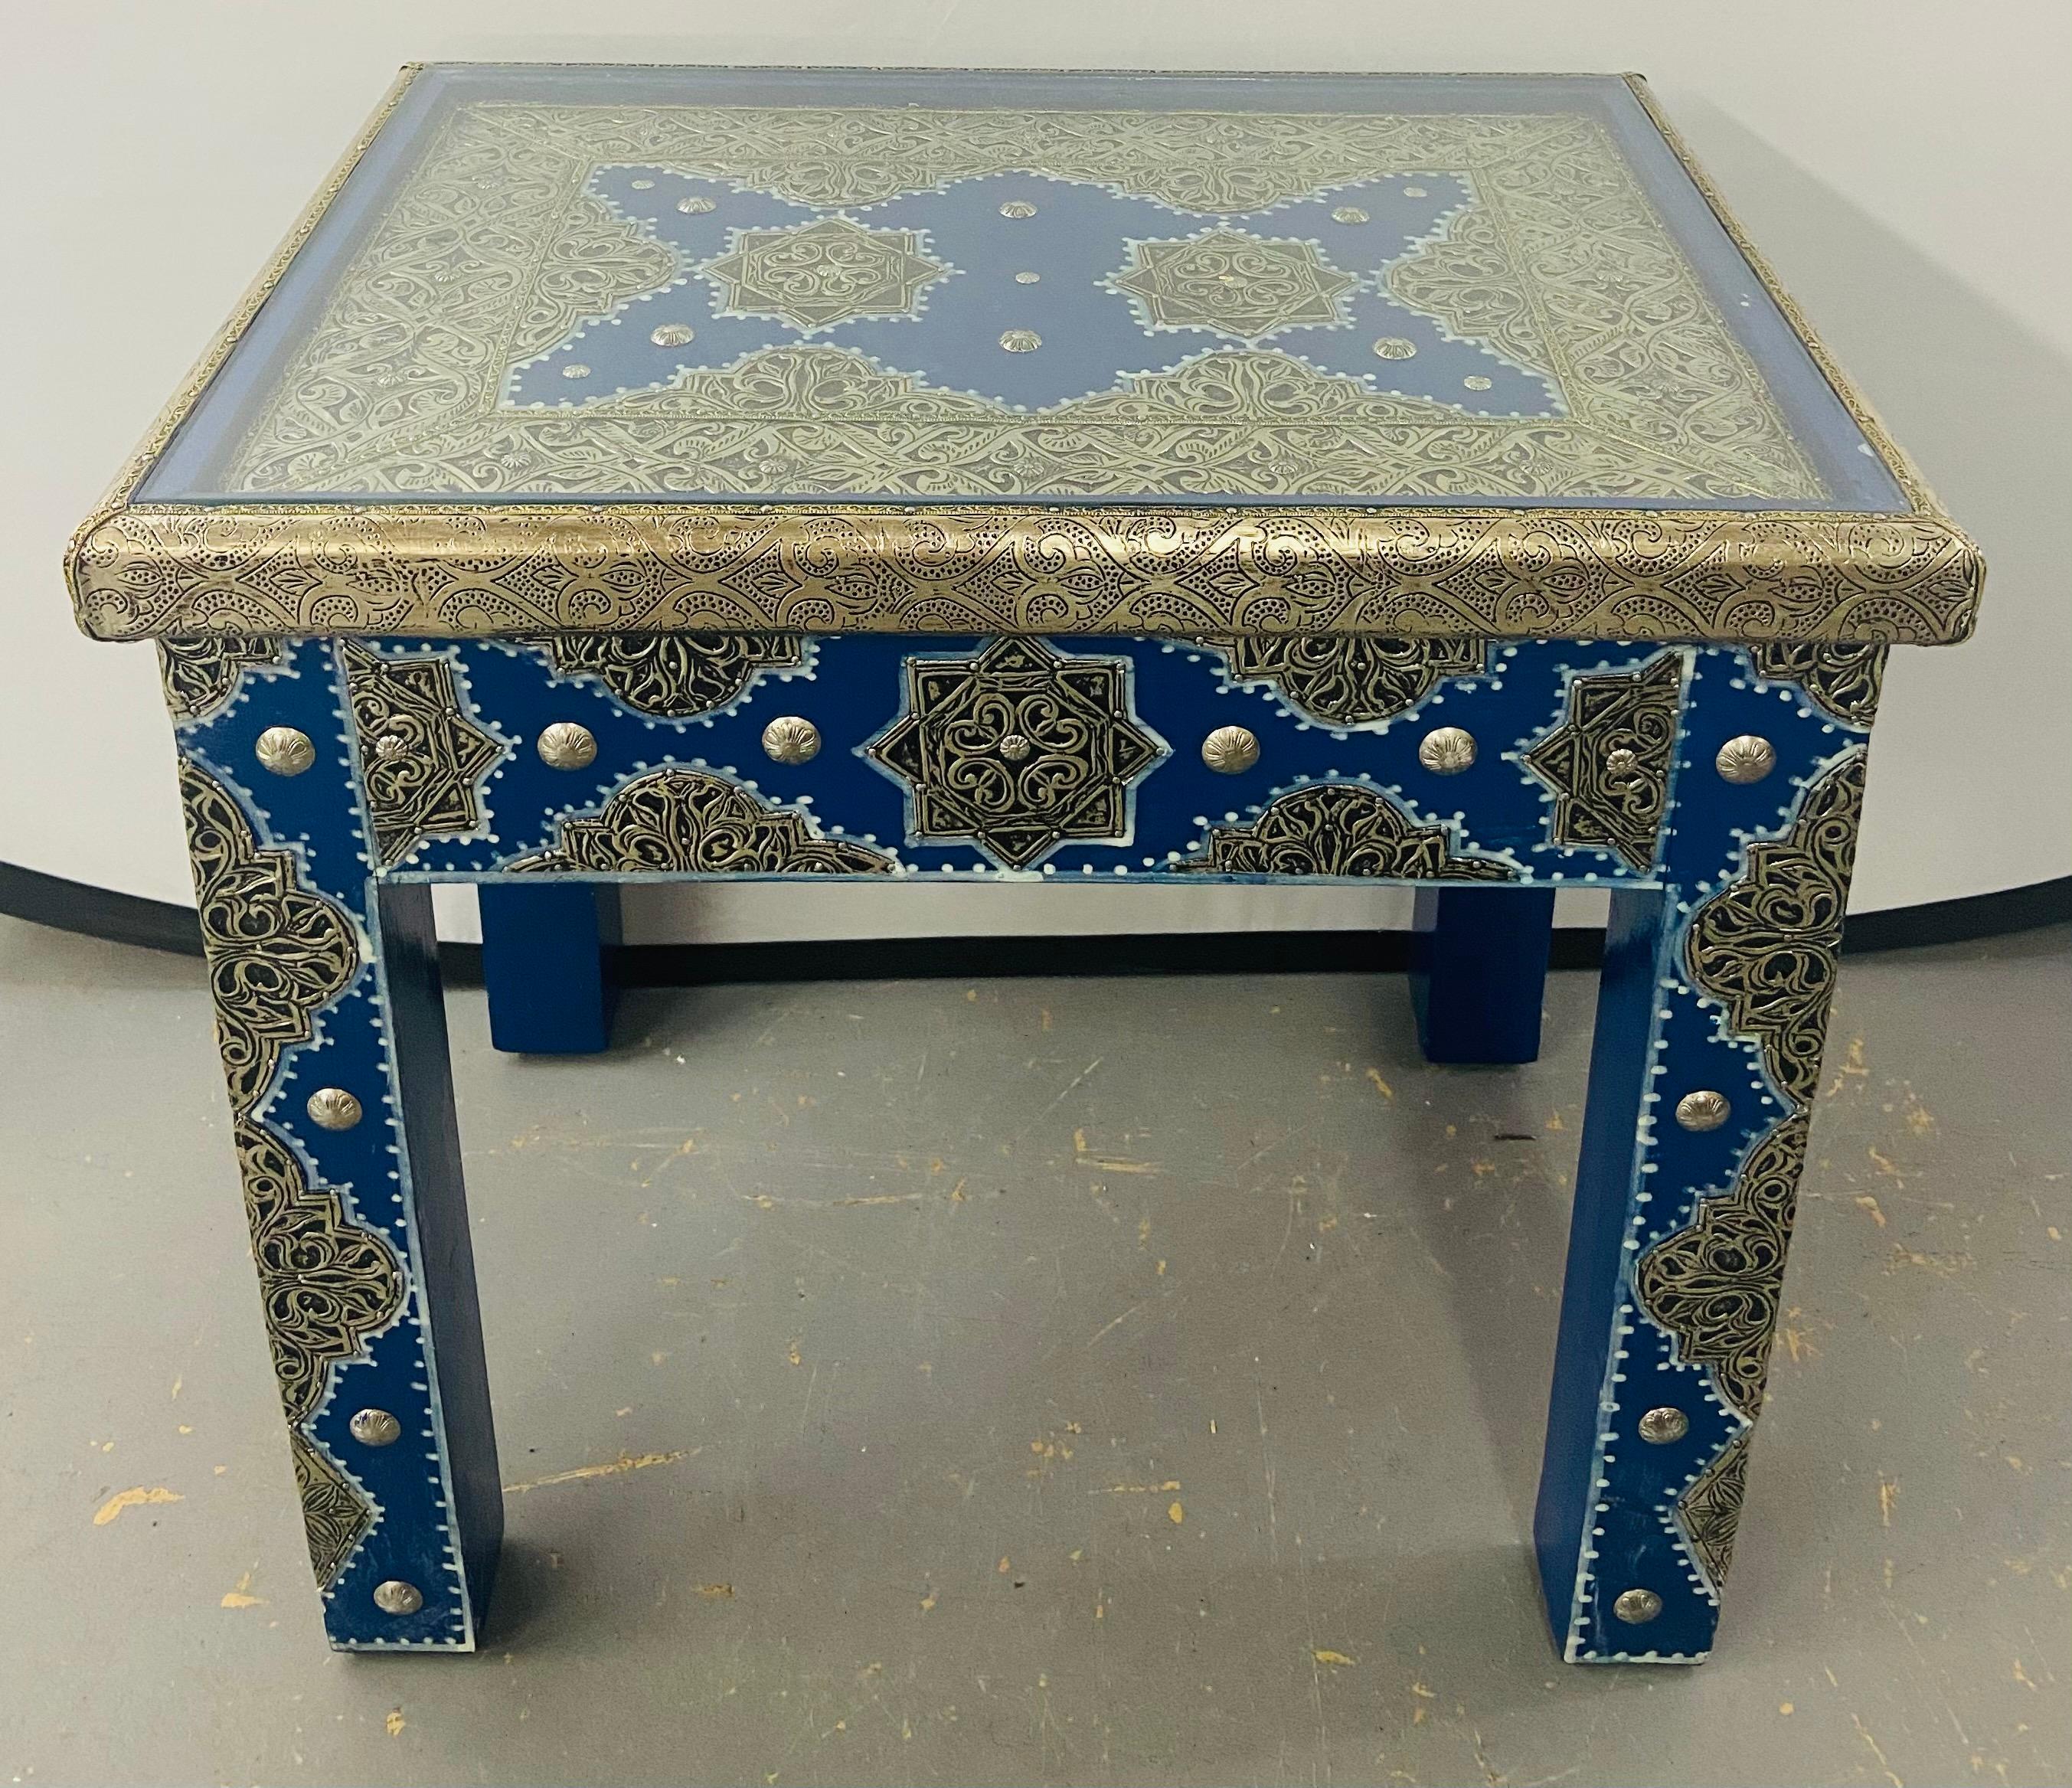 Ein außergewöhnliches Paar marokkanischer Beistelltische im Hollywood-Regency-Stil mit Intarsien aus weißem Messing in blauem Majorelle. Dieser von Meisterhandwerkern entworfene, handgefertigte Tisch aus feinem Weißmessing und handbemalt in blauem